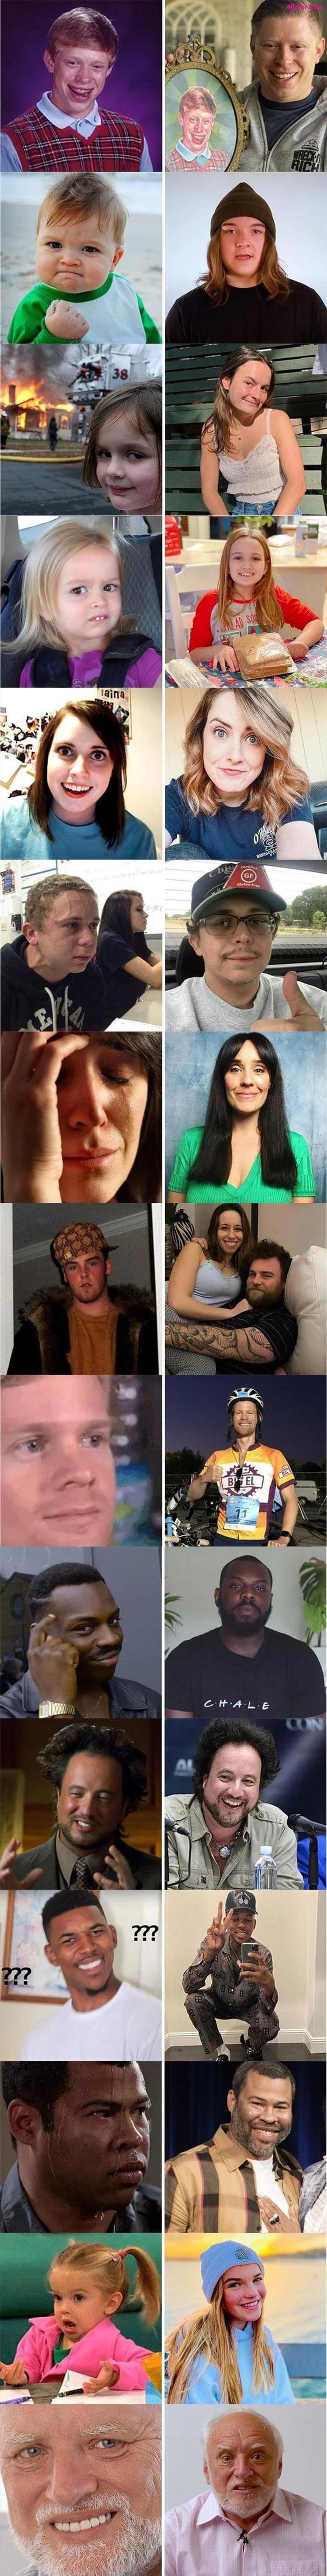 Gente meme: antes y ahora